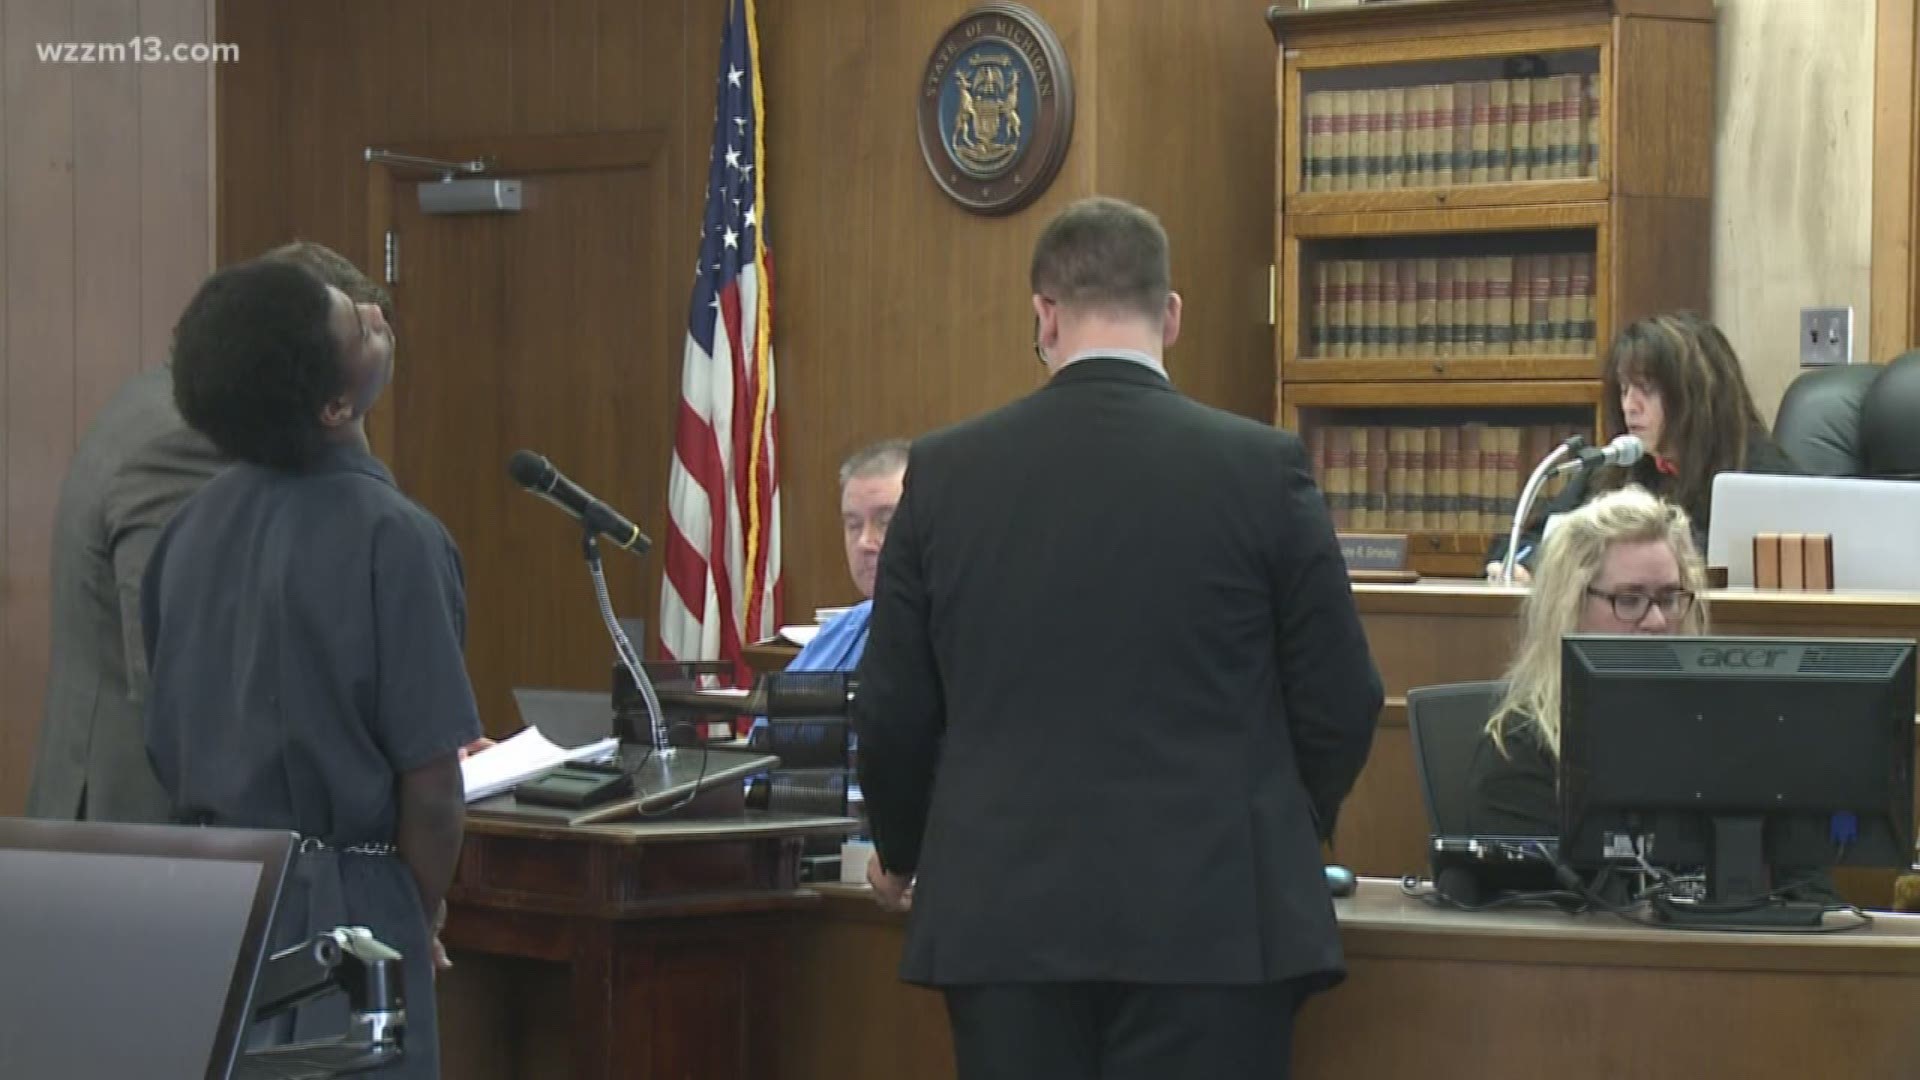 Trevon Godbolt withdraws guilty plea, case will go to trial